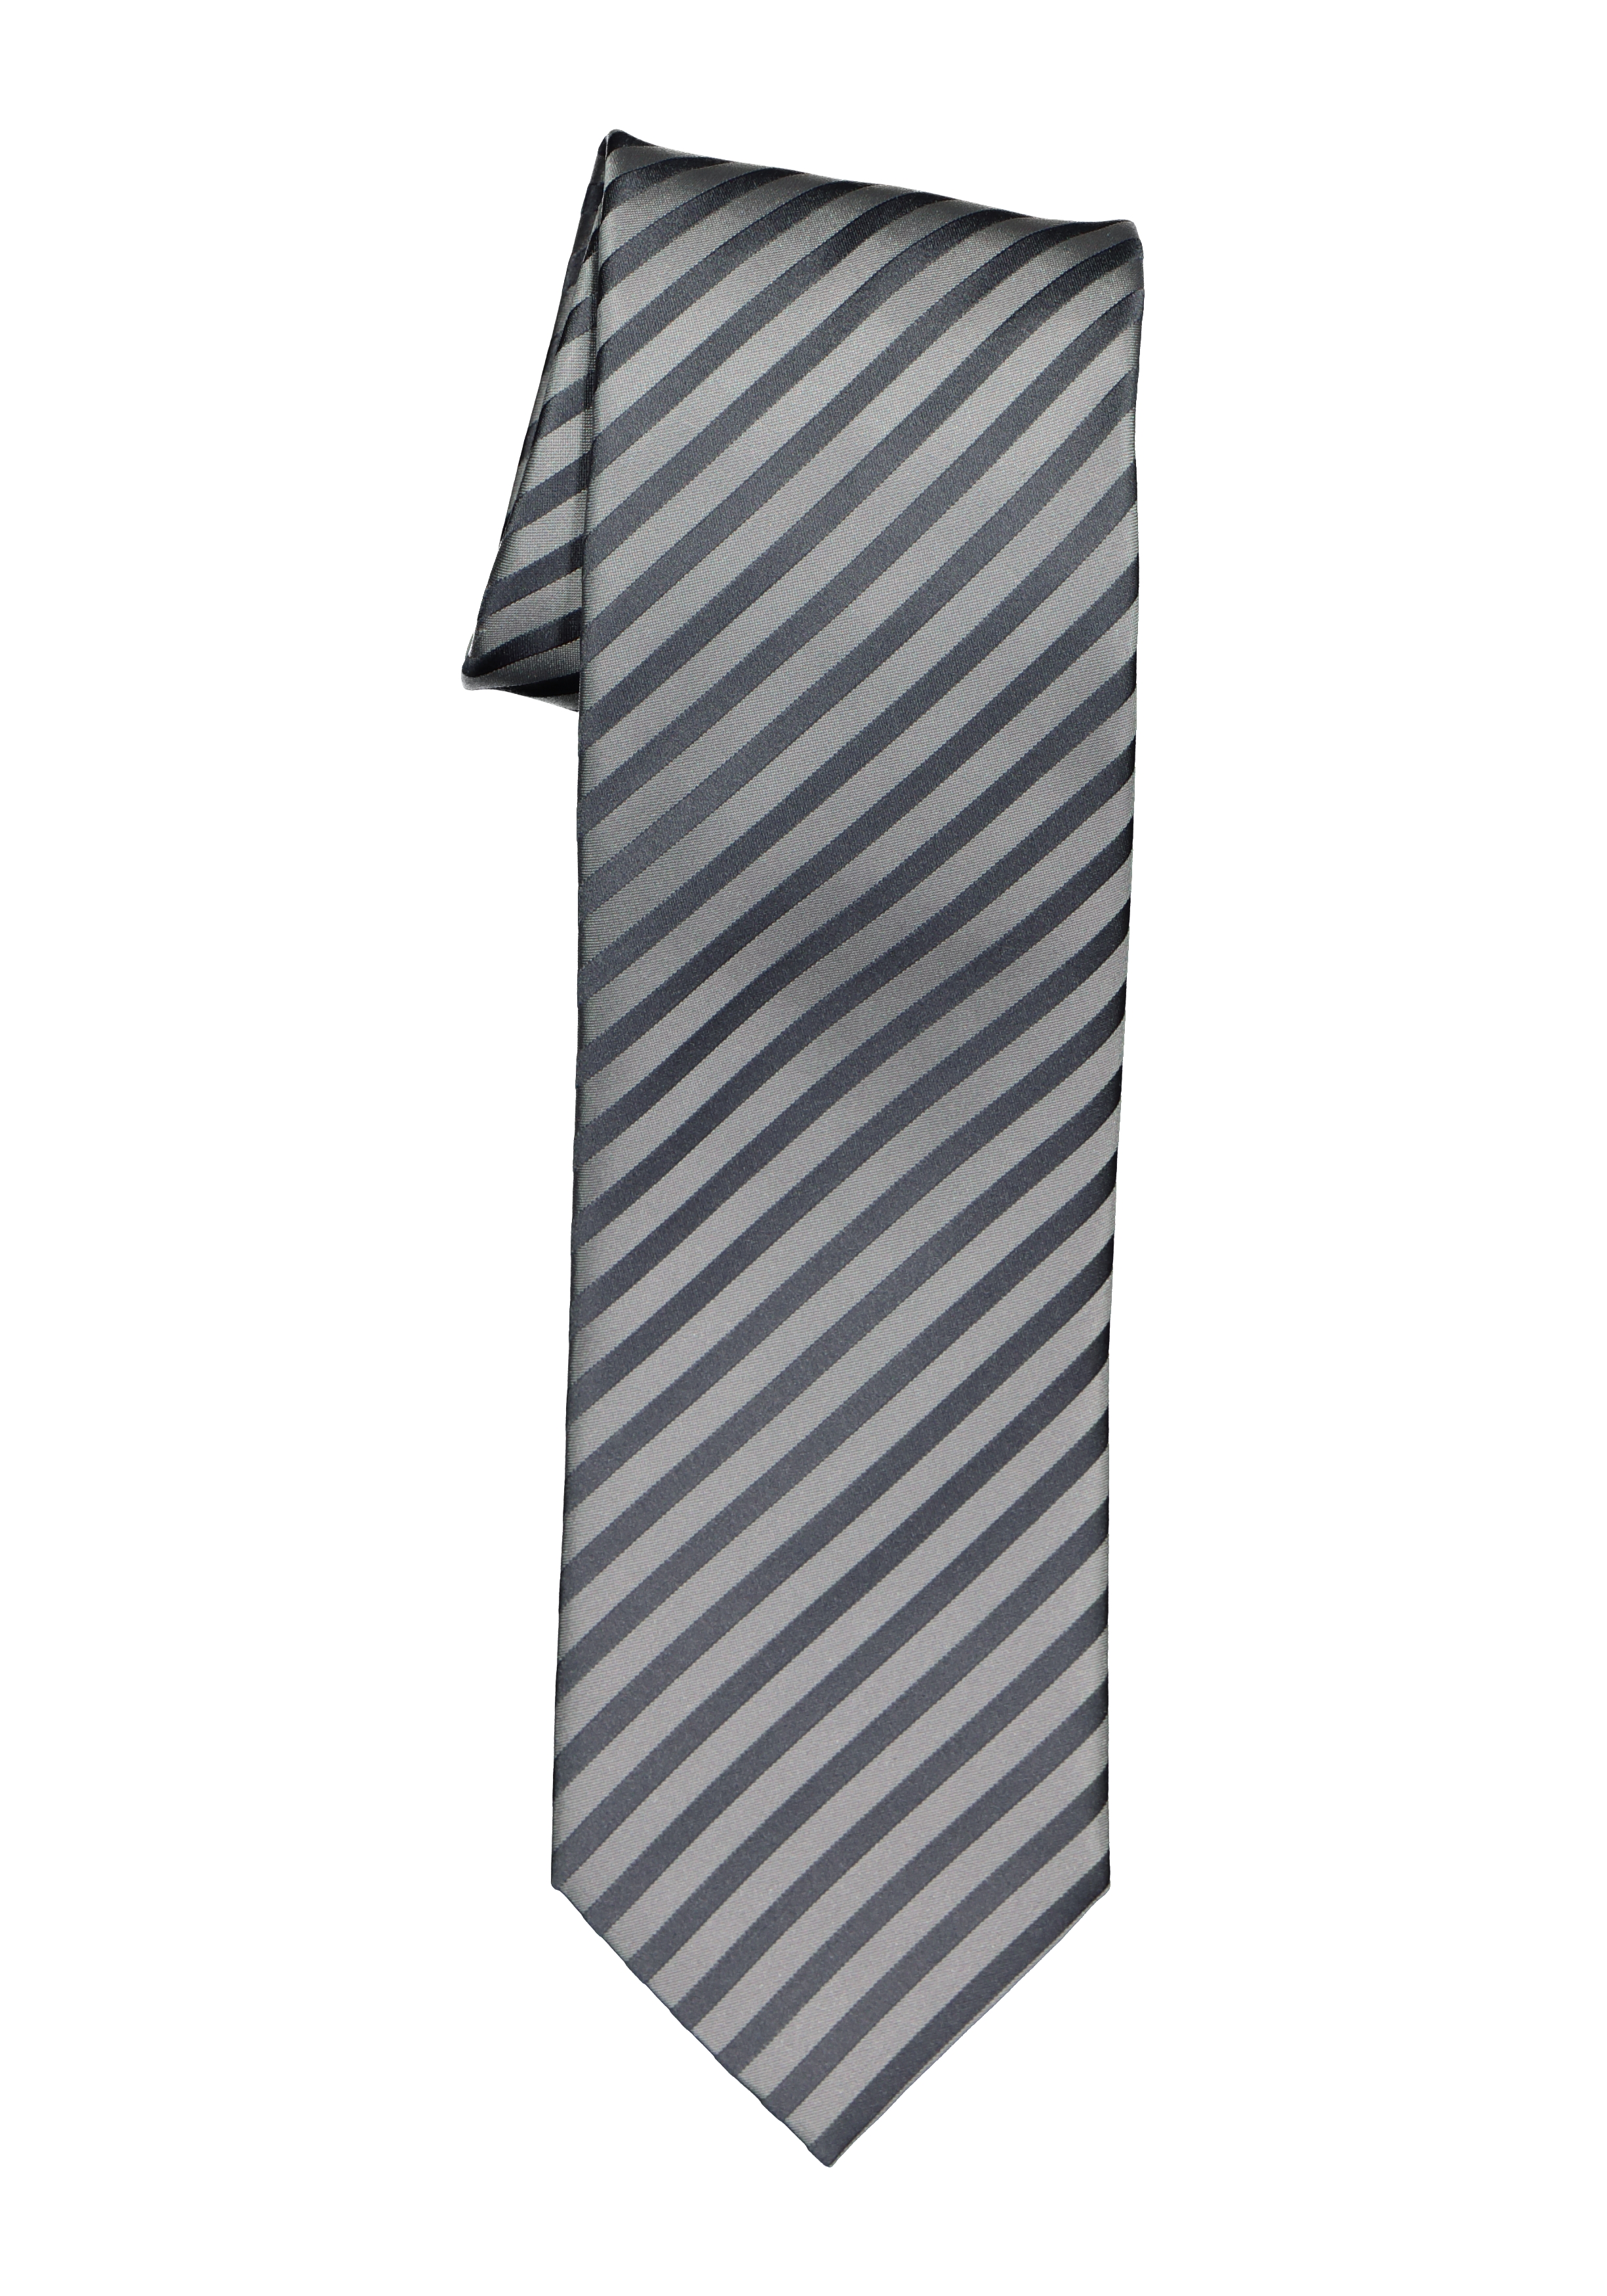 OLYMP stropdas, grijs gestreept